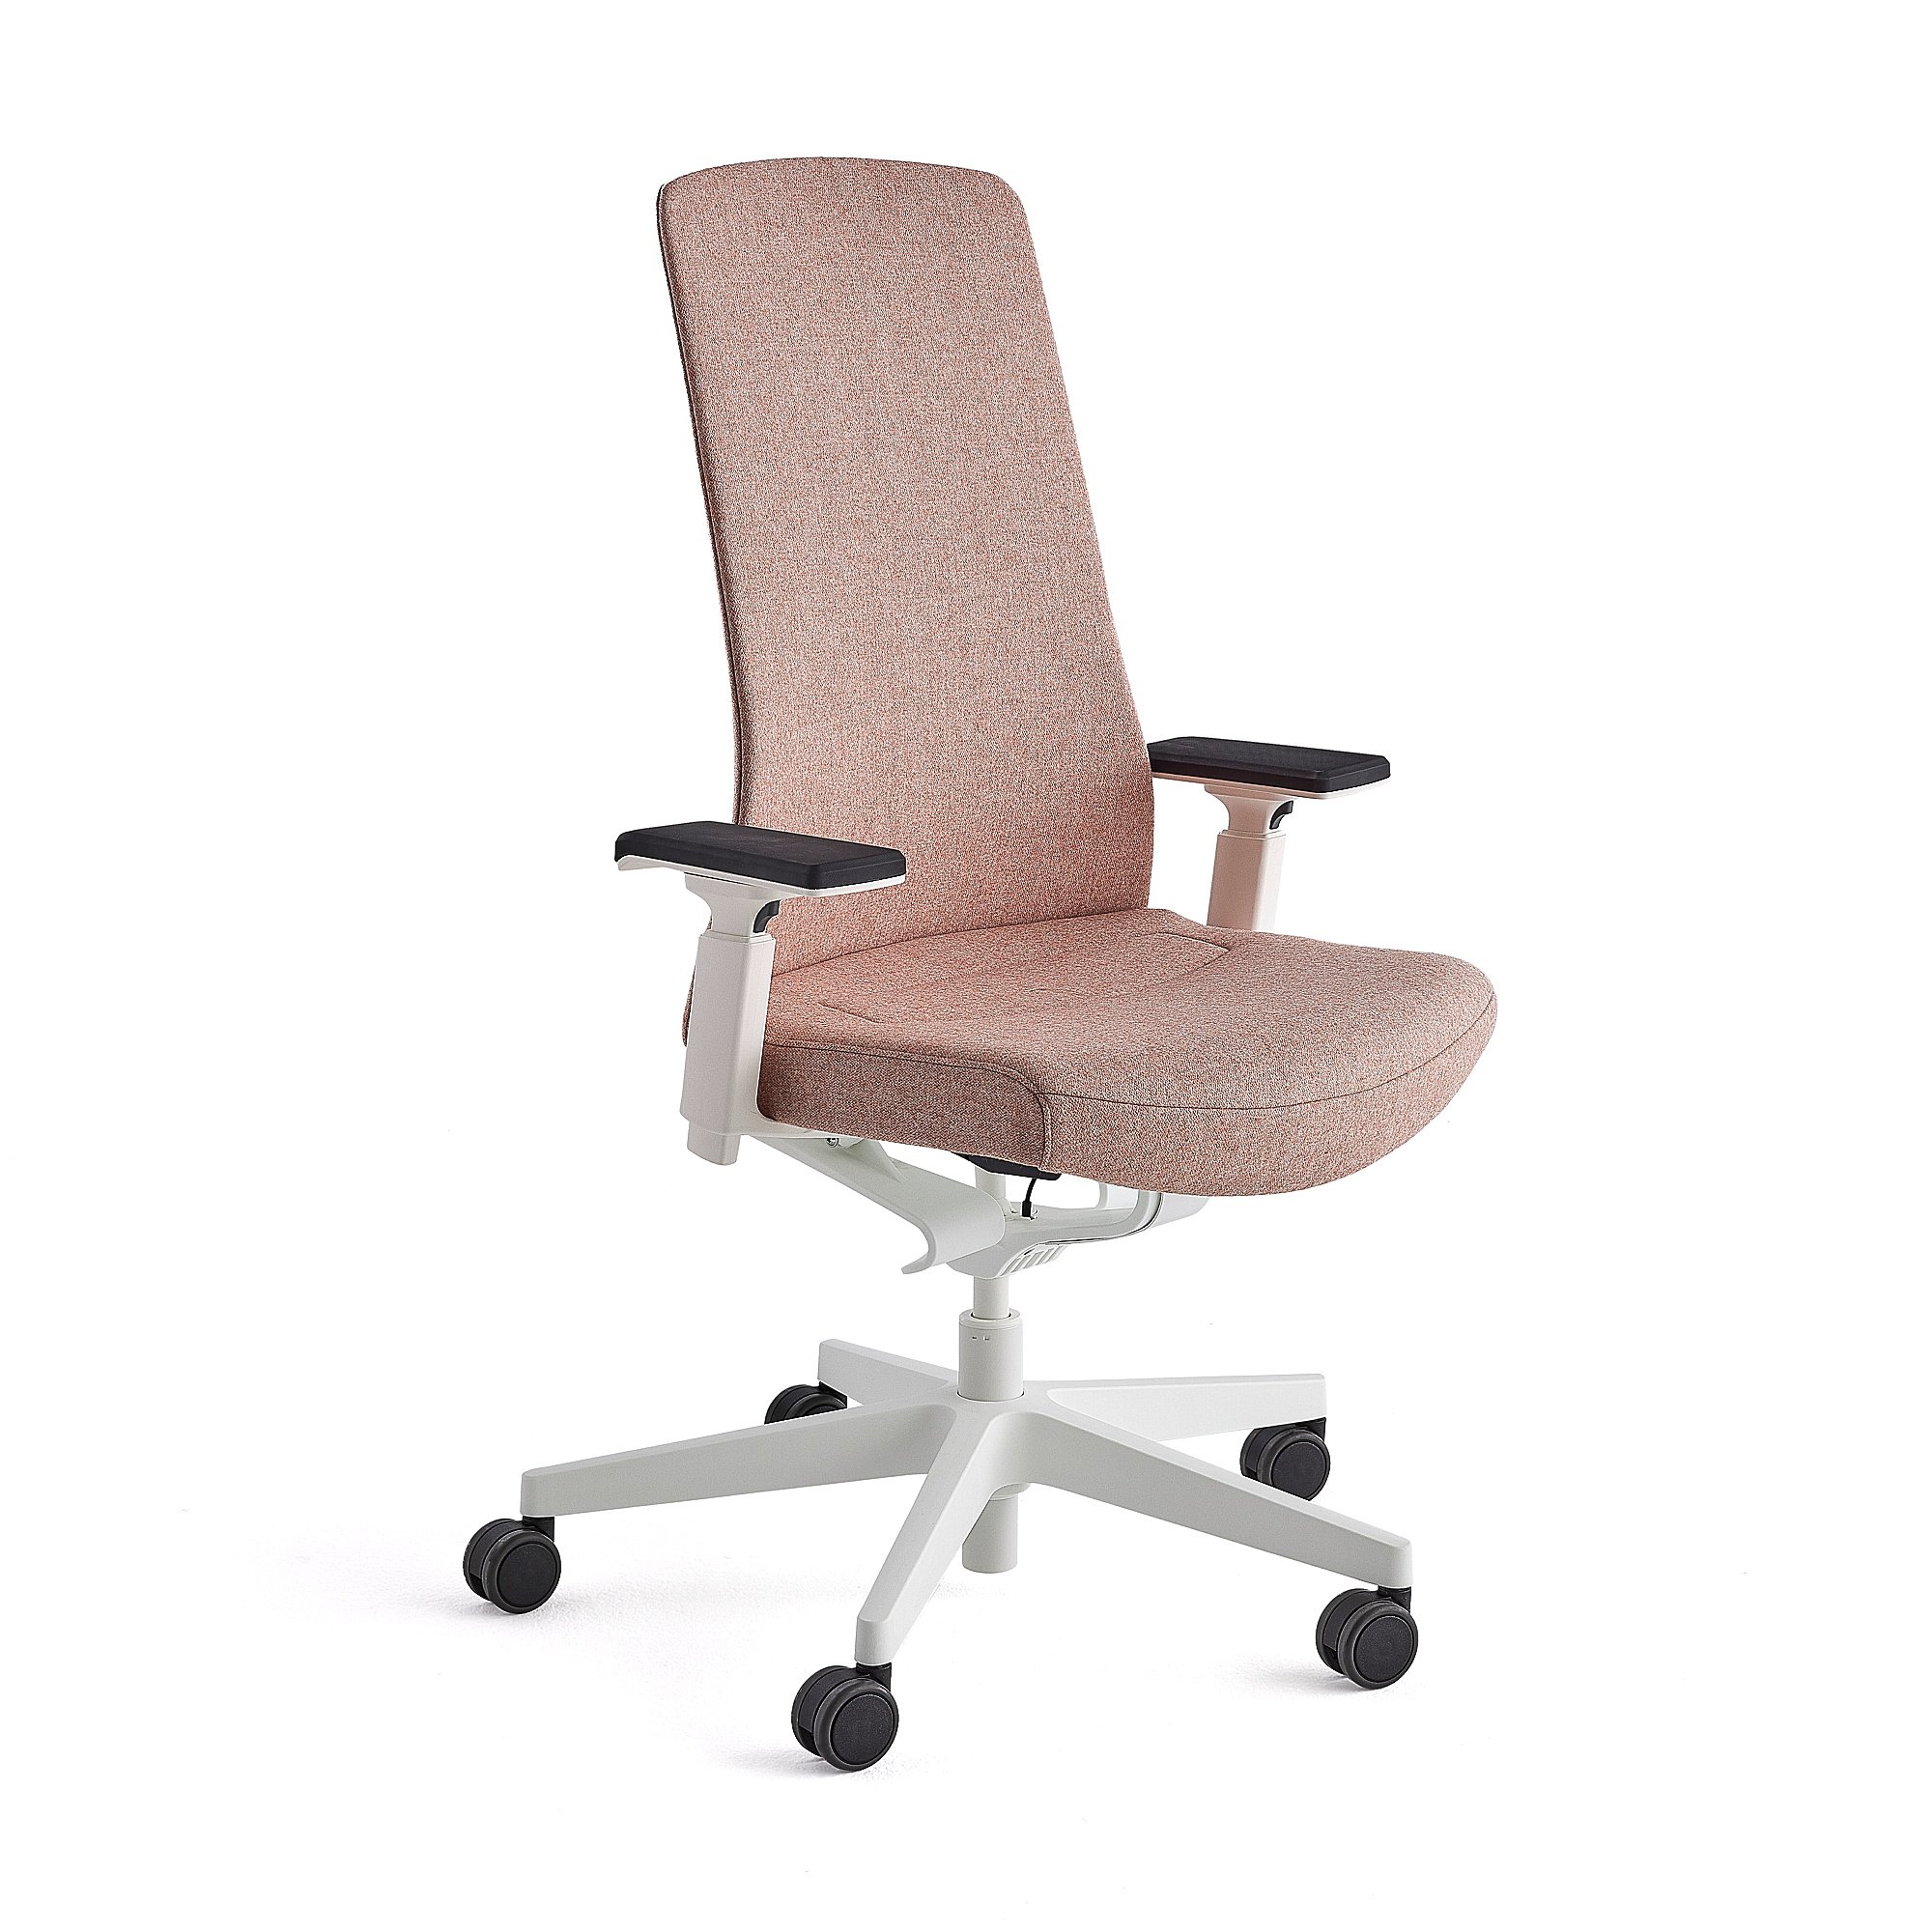 Kancelářská židle BELMONT, bílá, lososově růžová